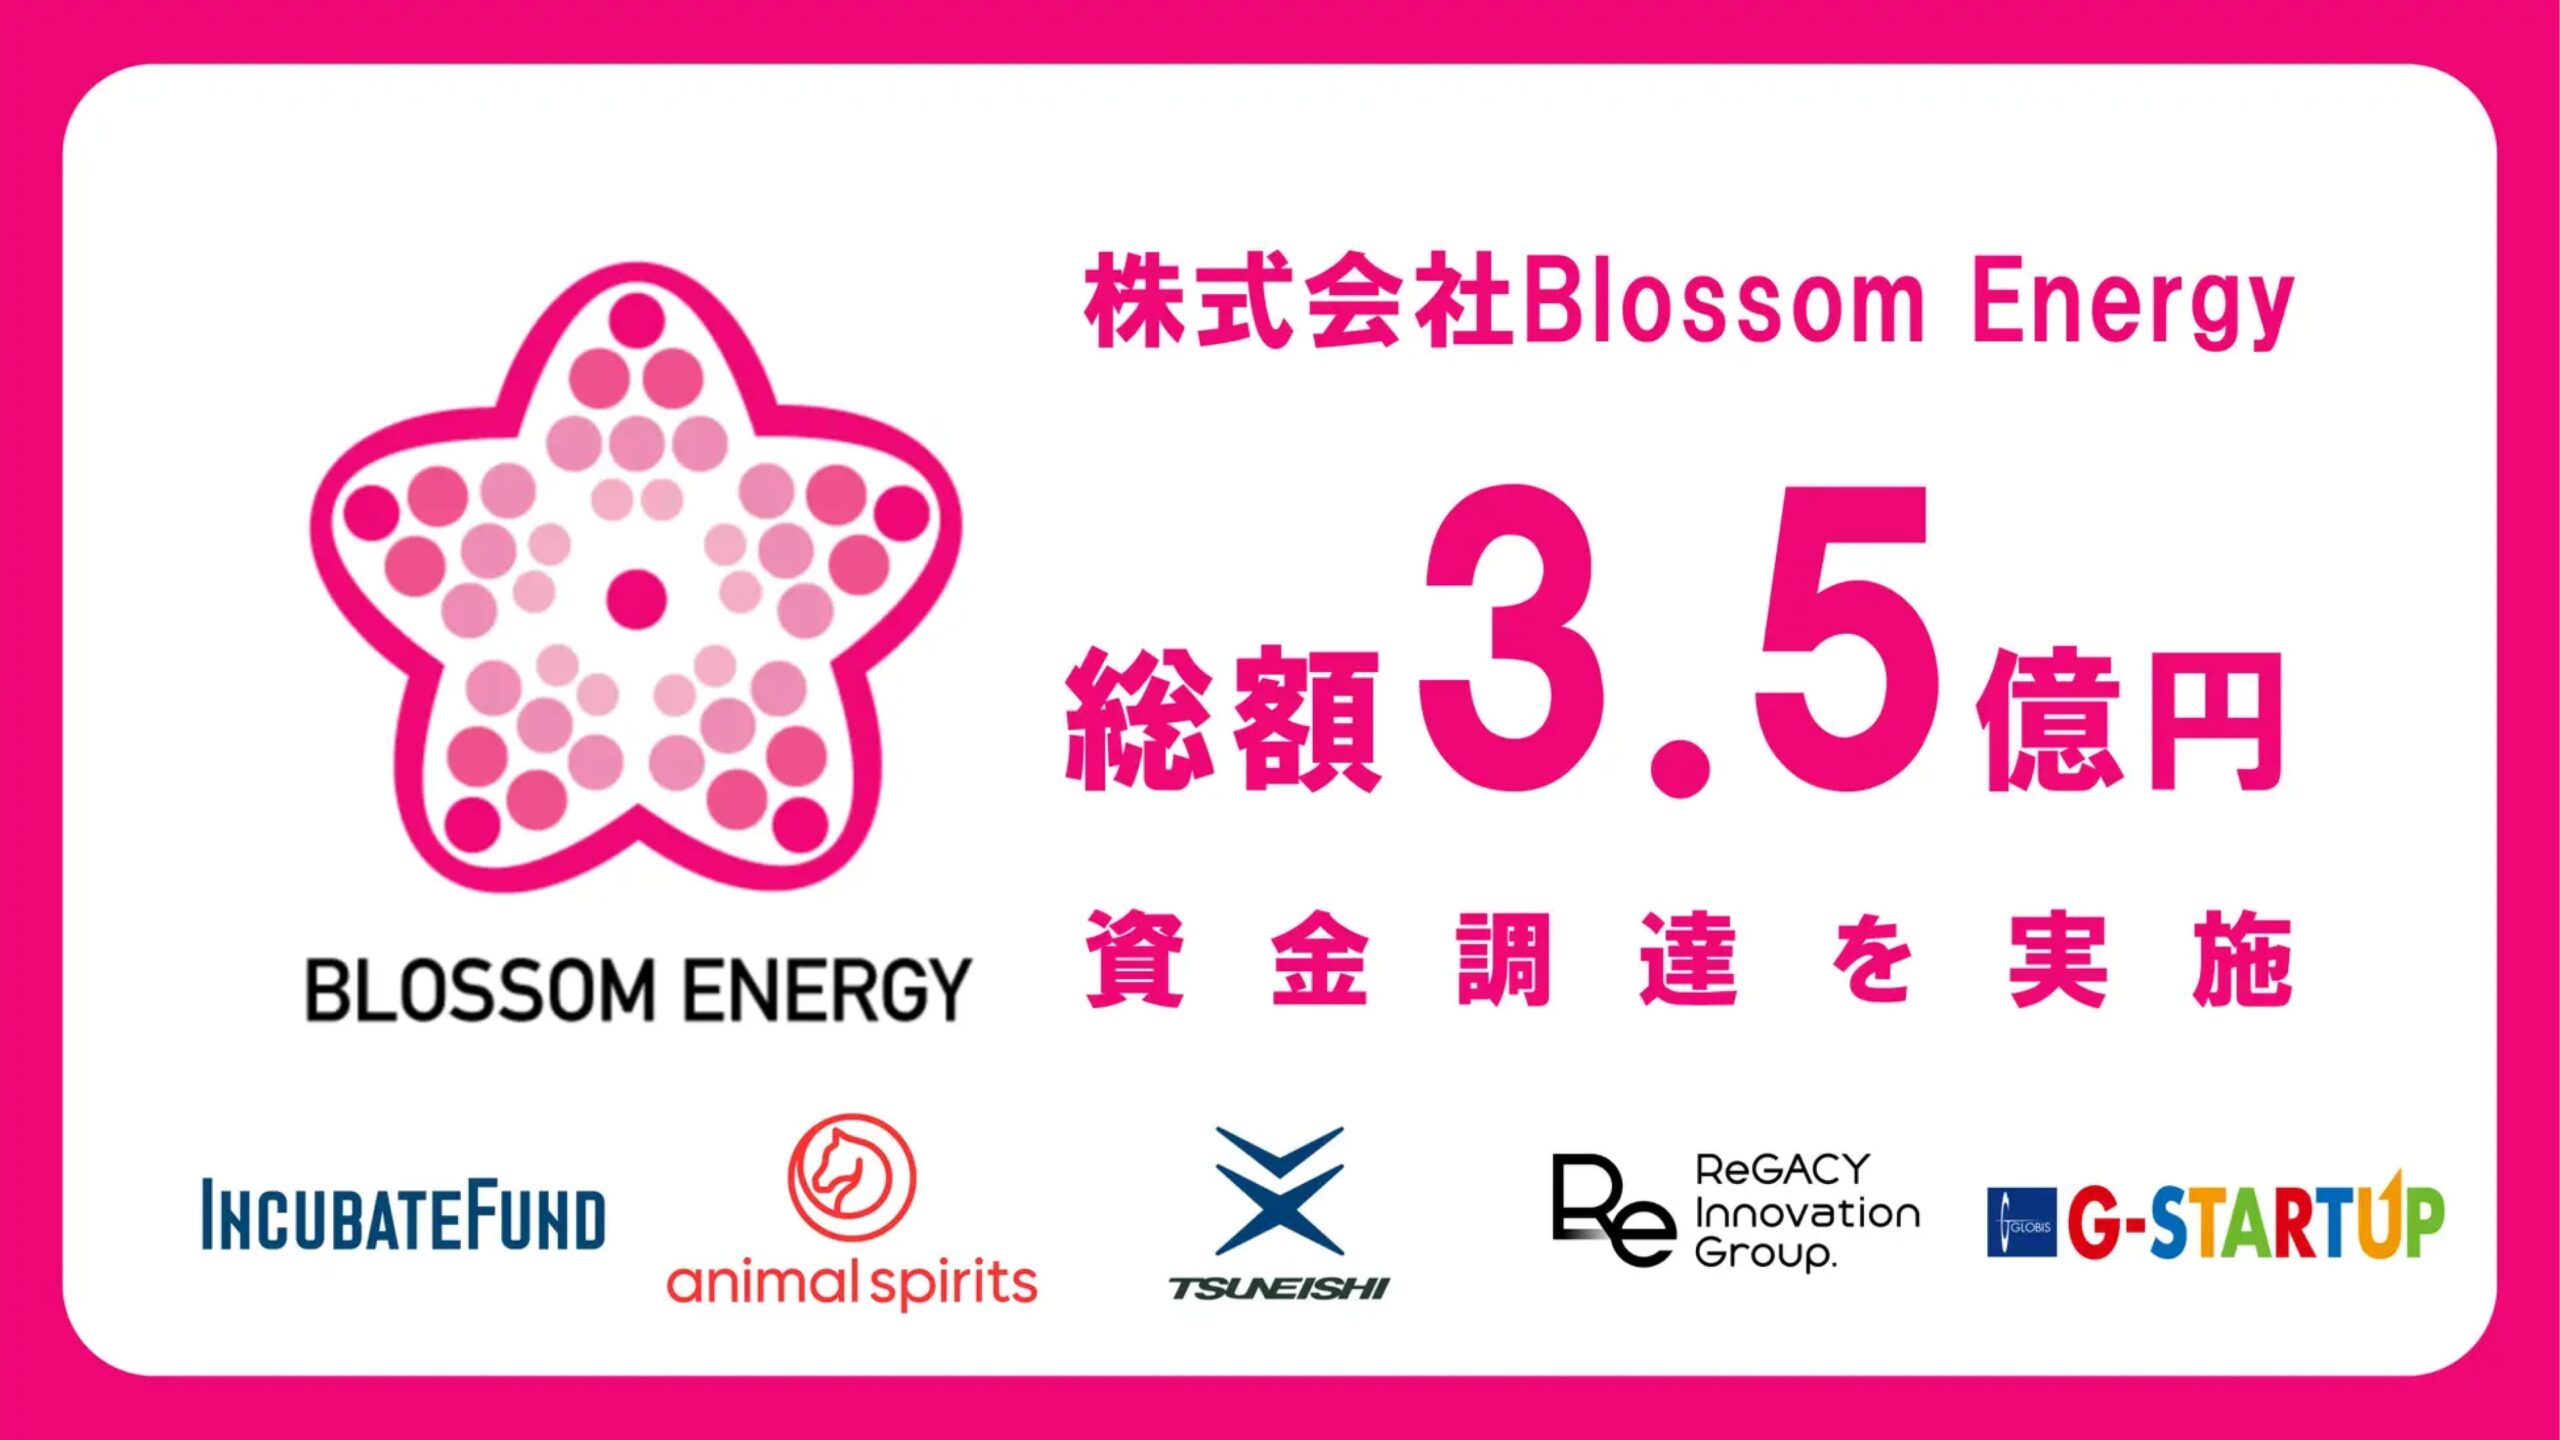 「スチームのグリーン化」を目指す株式会社Blossom Energy、プレシリーズAで総額3.5億円を調達ー累計調達額は4.5億円に